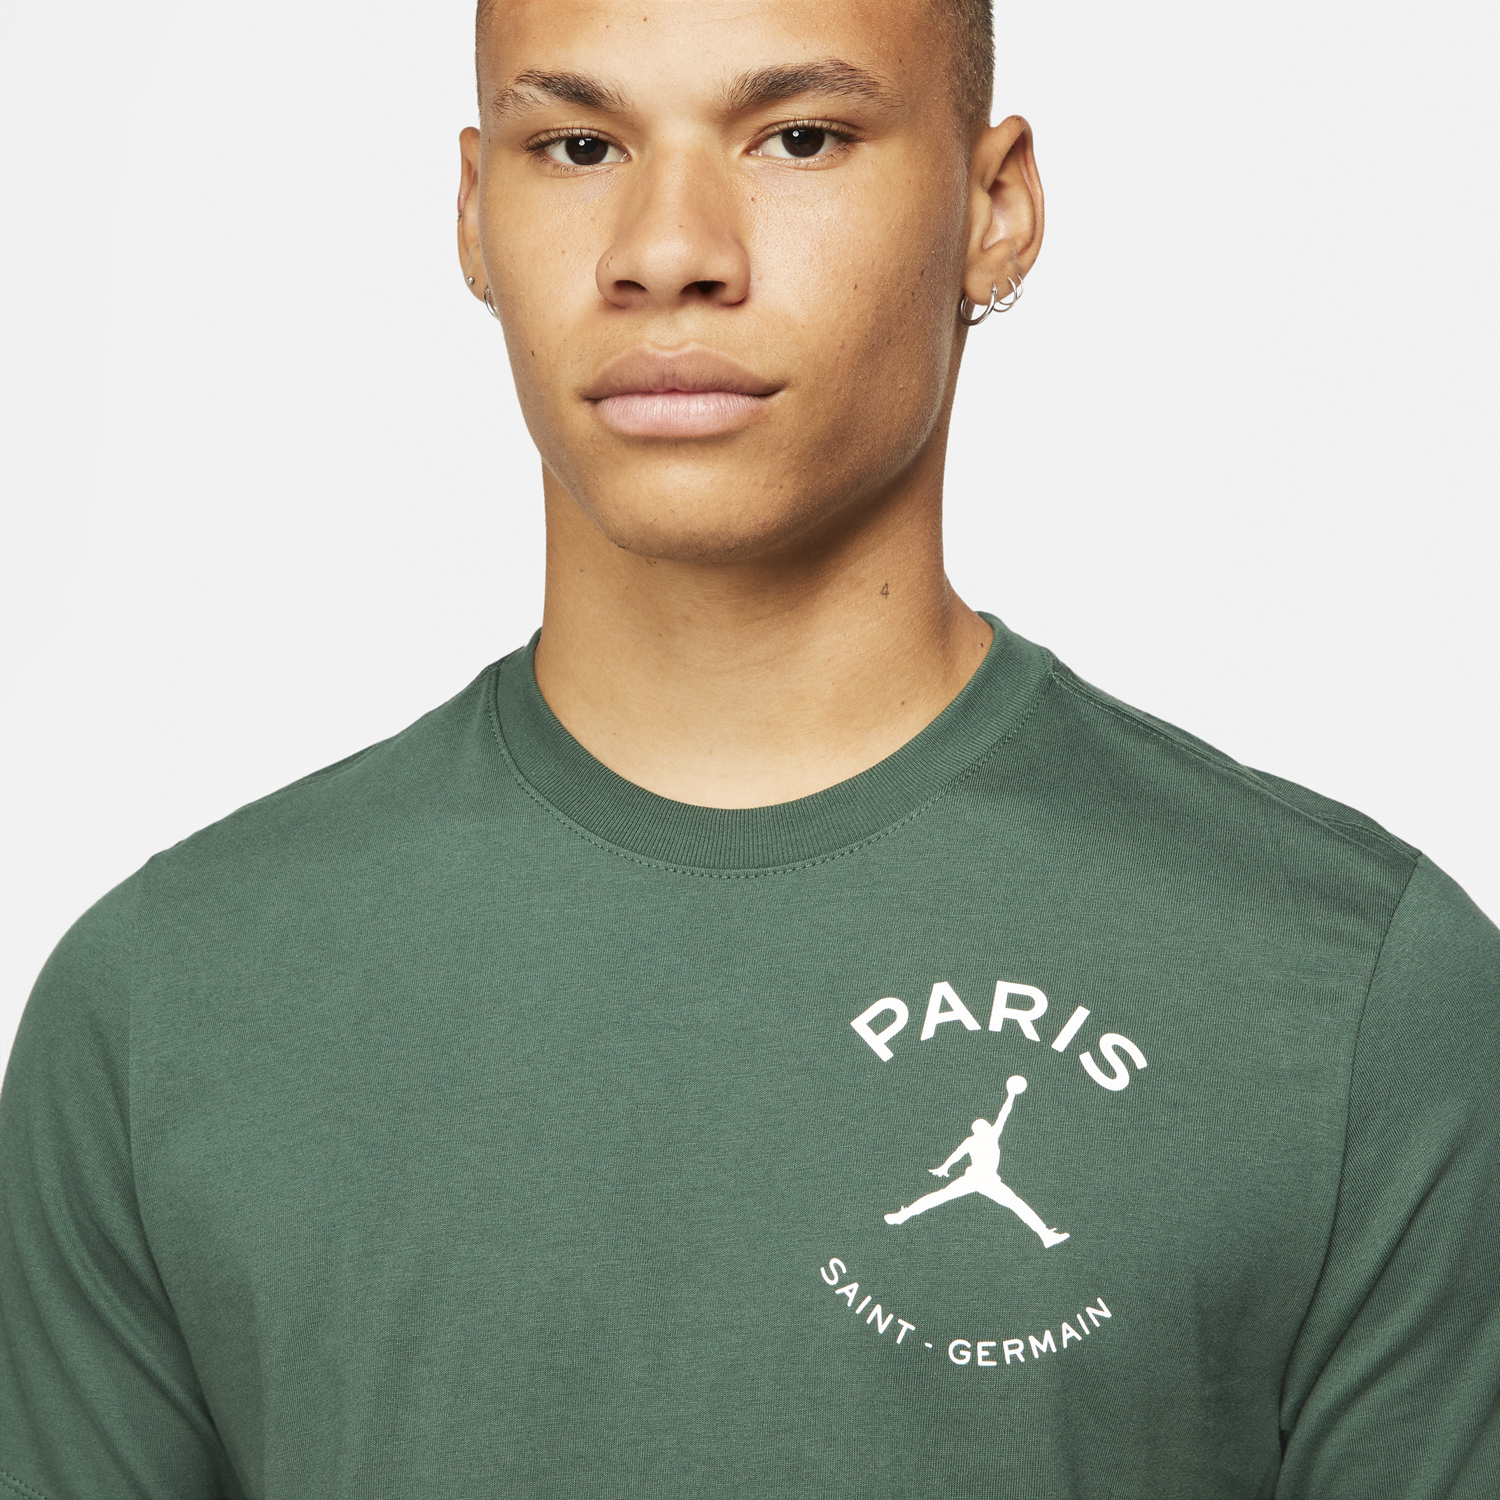 jordan-psg-paris-saint-germain-t-shirt-noble-green-3